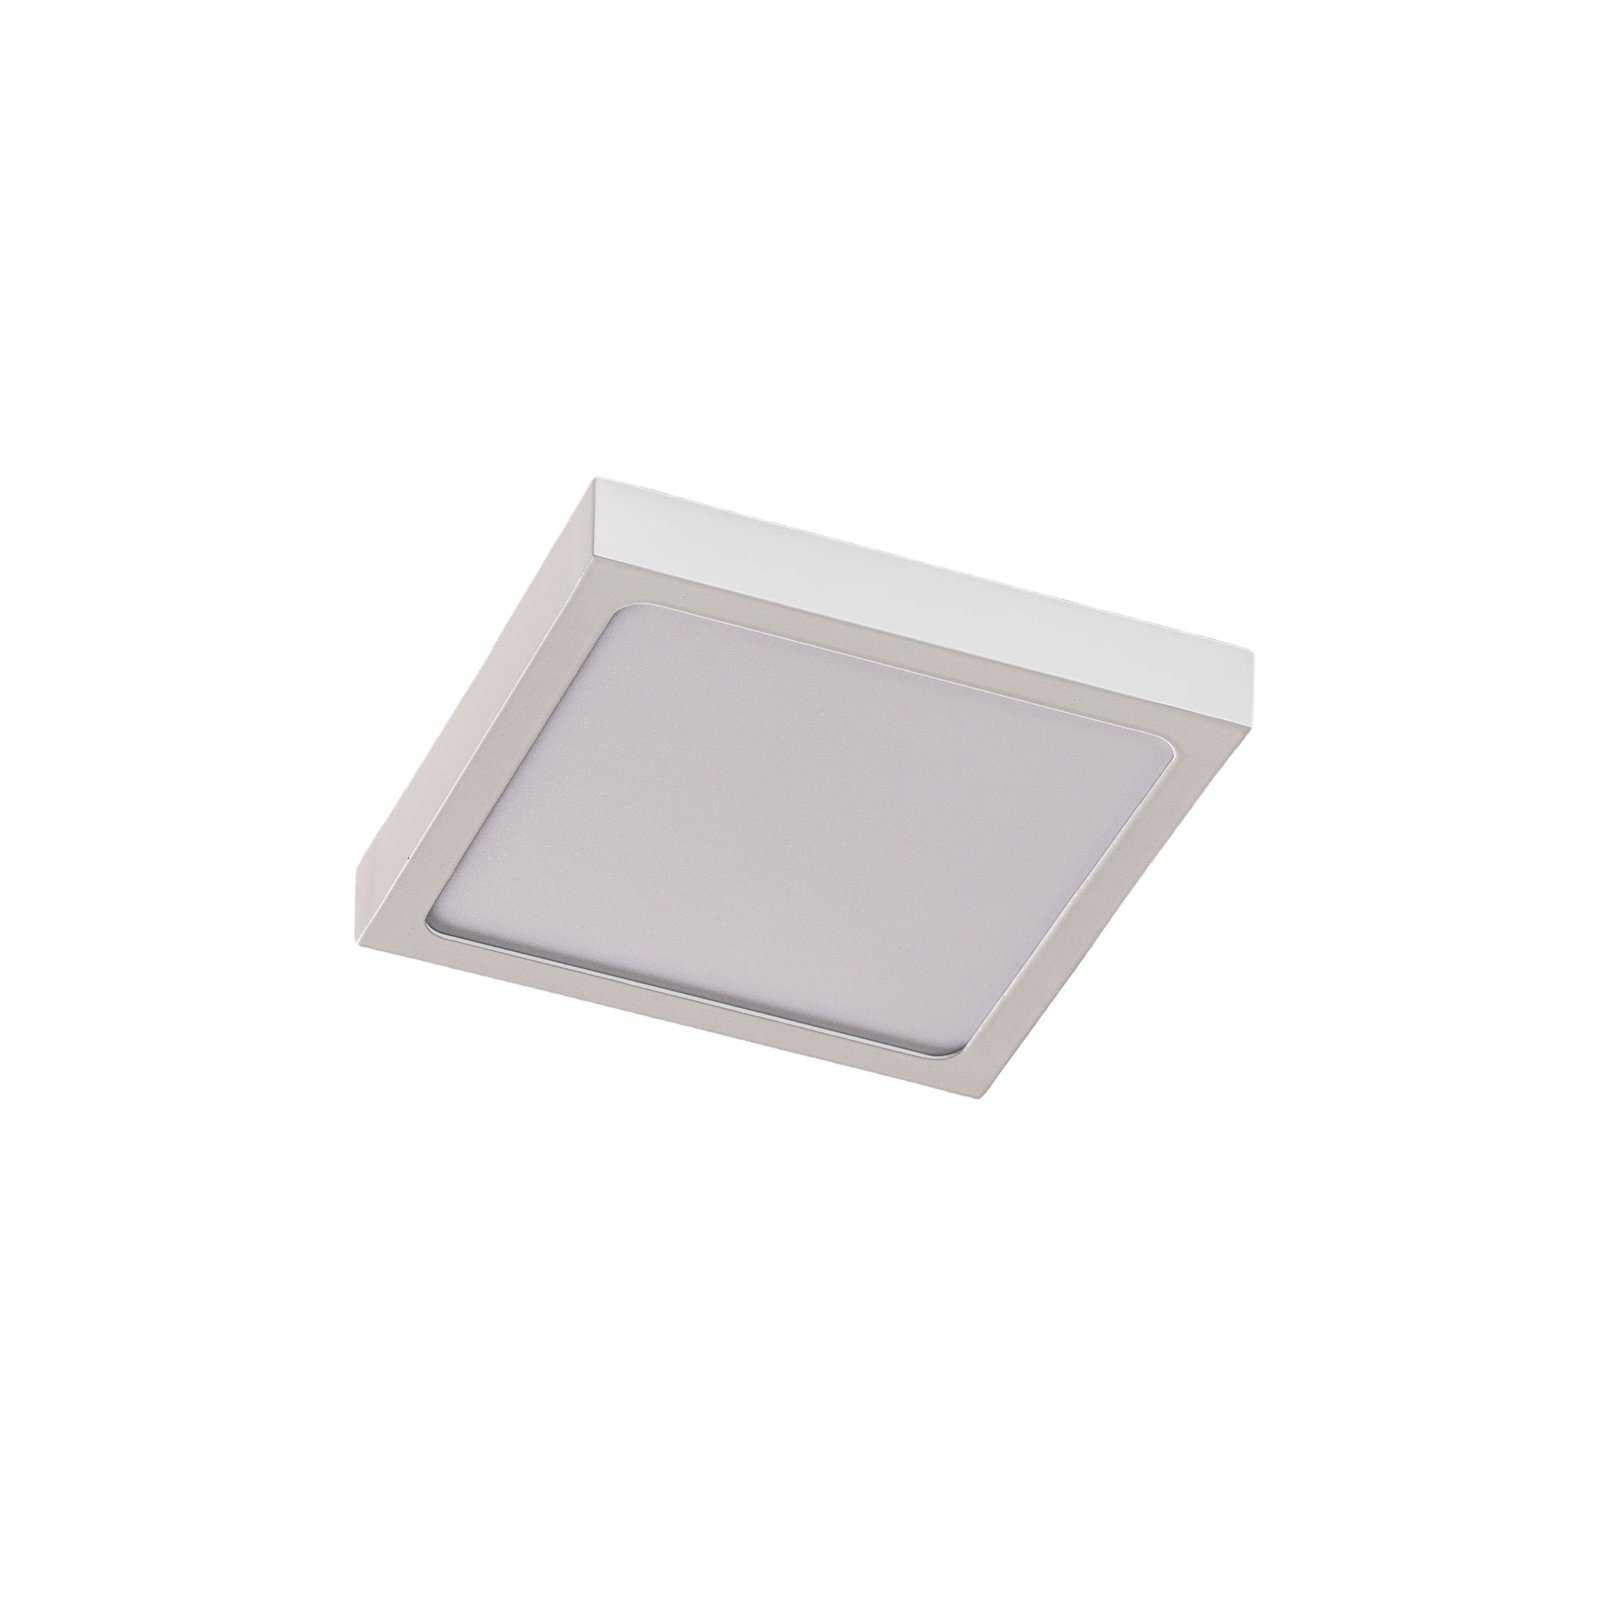 Kinkiet LED Vika kwadratowy, biały, 18x18cm